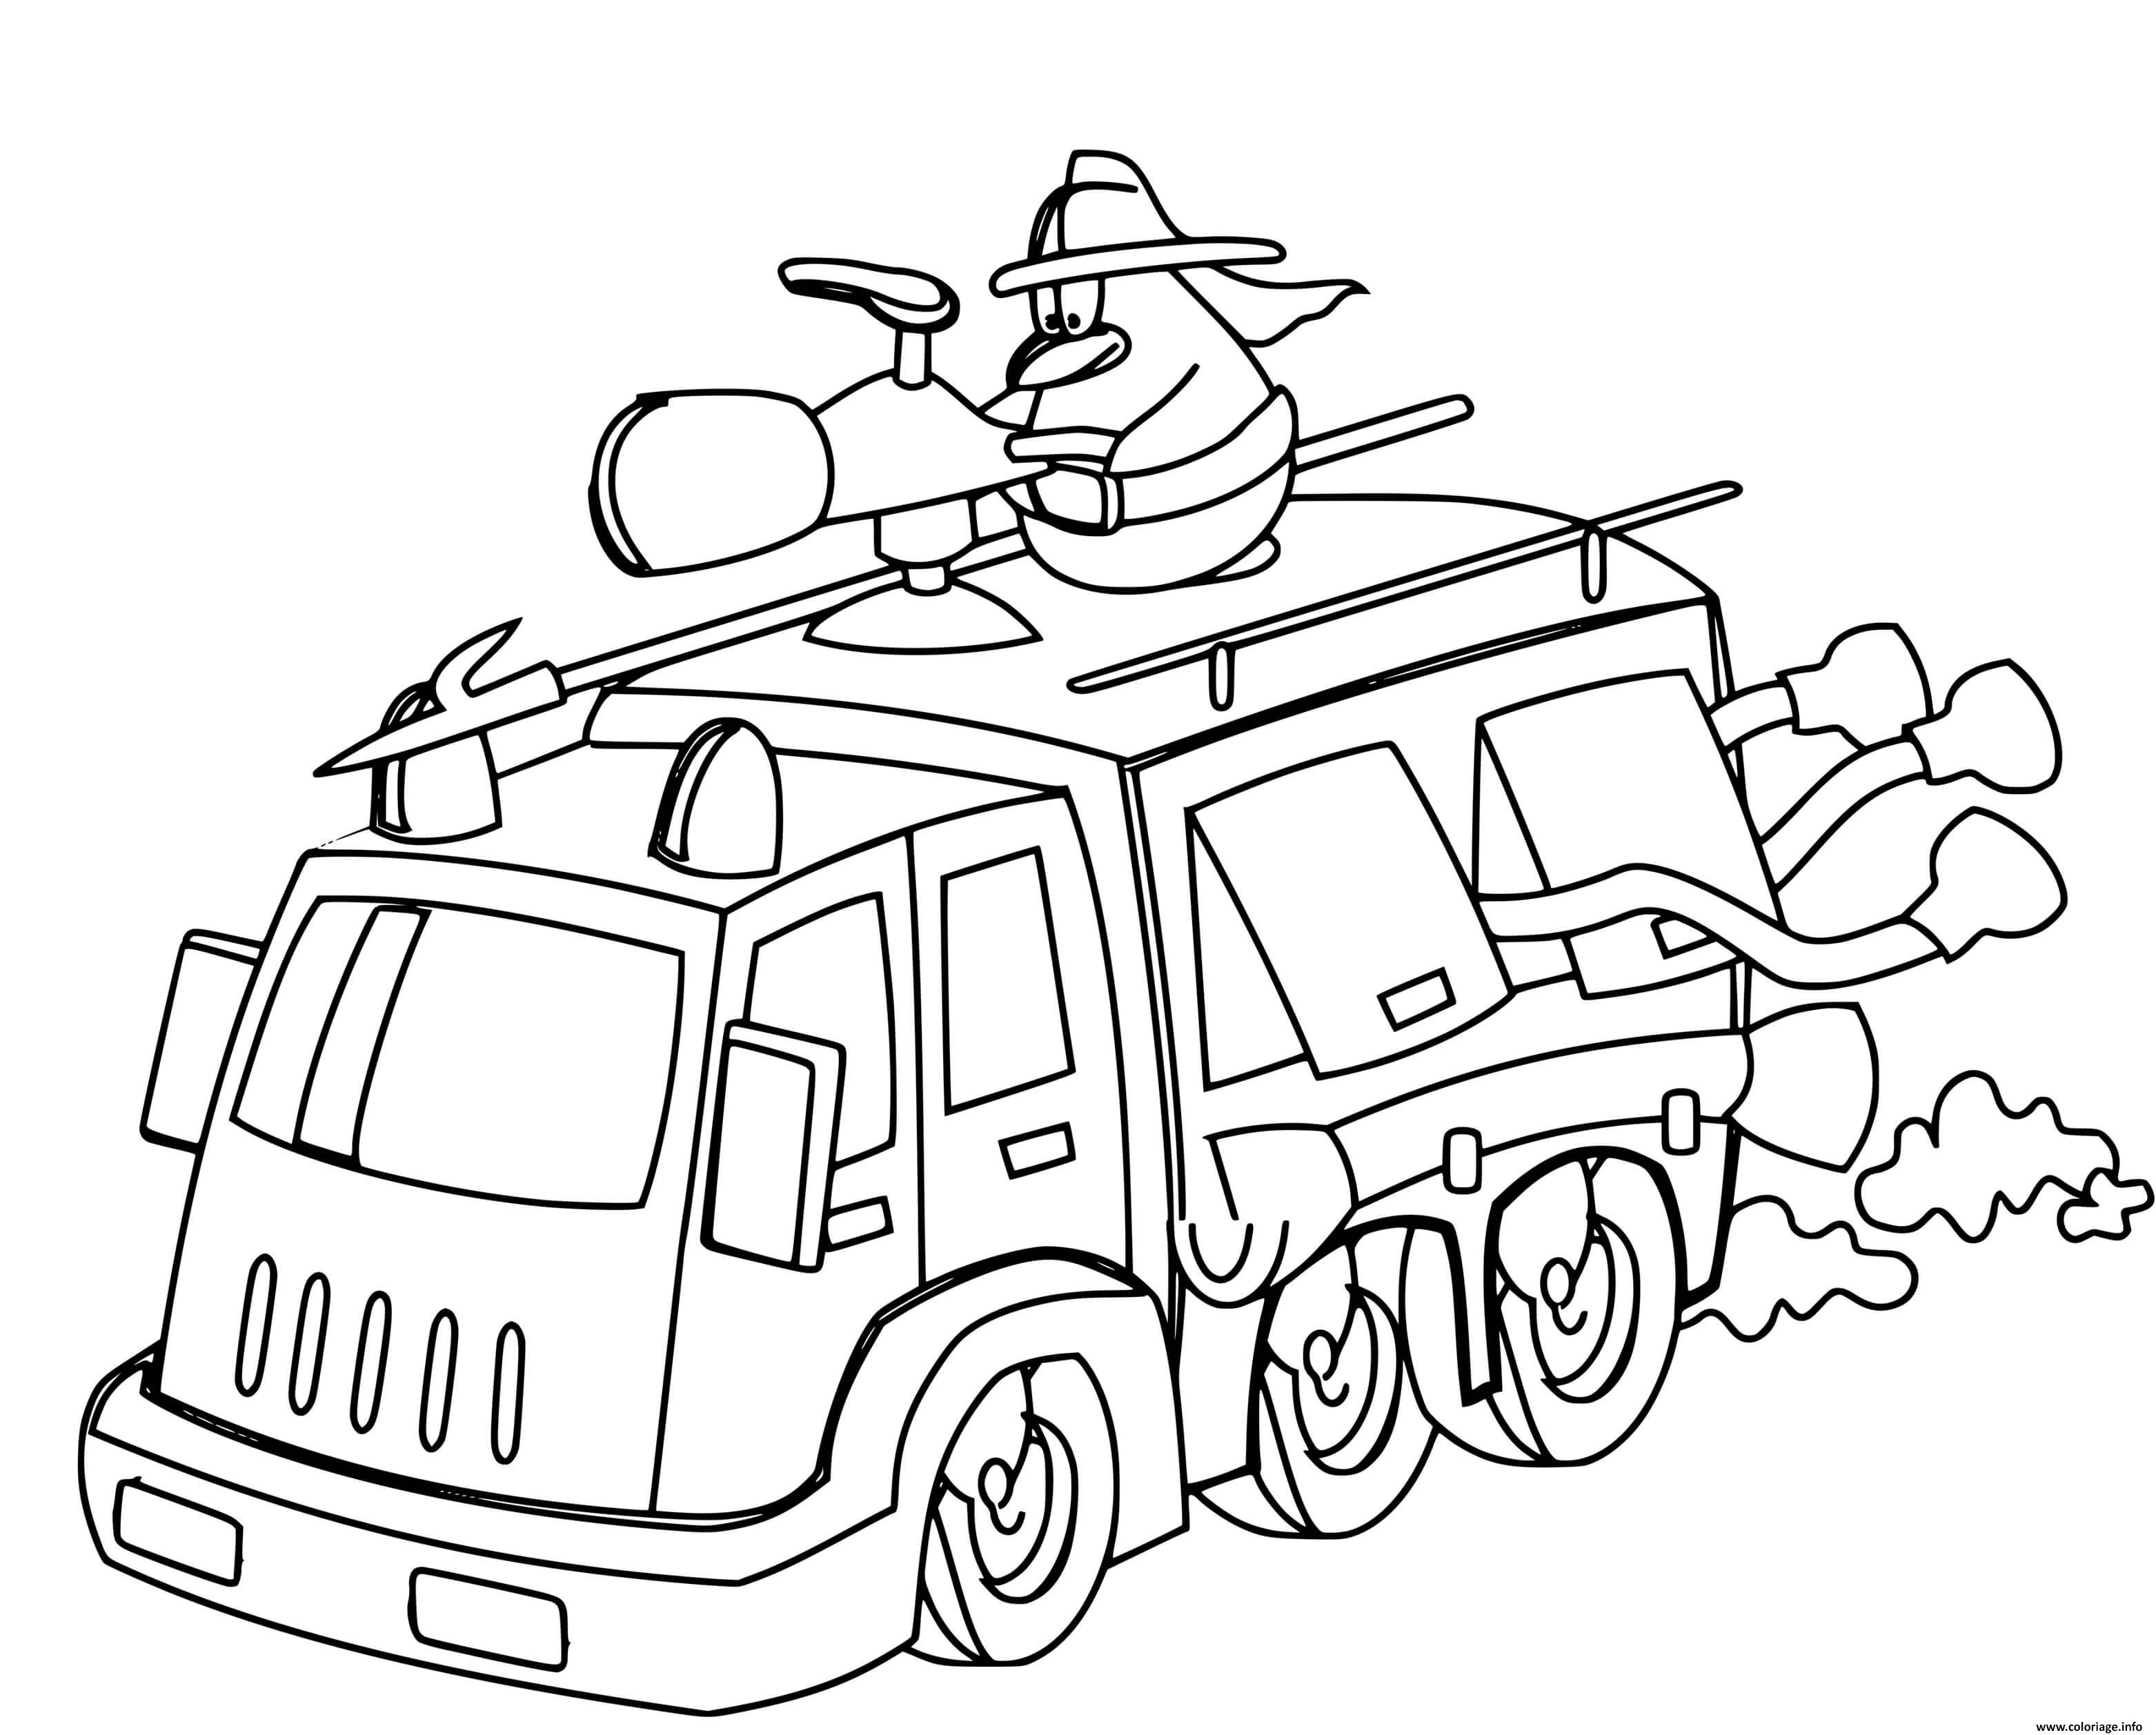 Dessin un dessin anime sur un camion de pompier a pleine vitesse Coloriage Gratuit à Imprimer